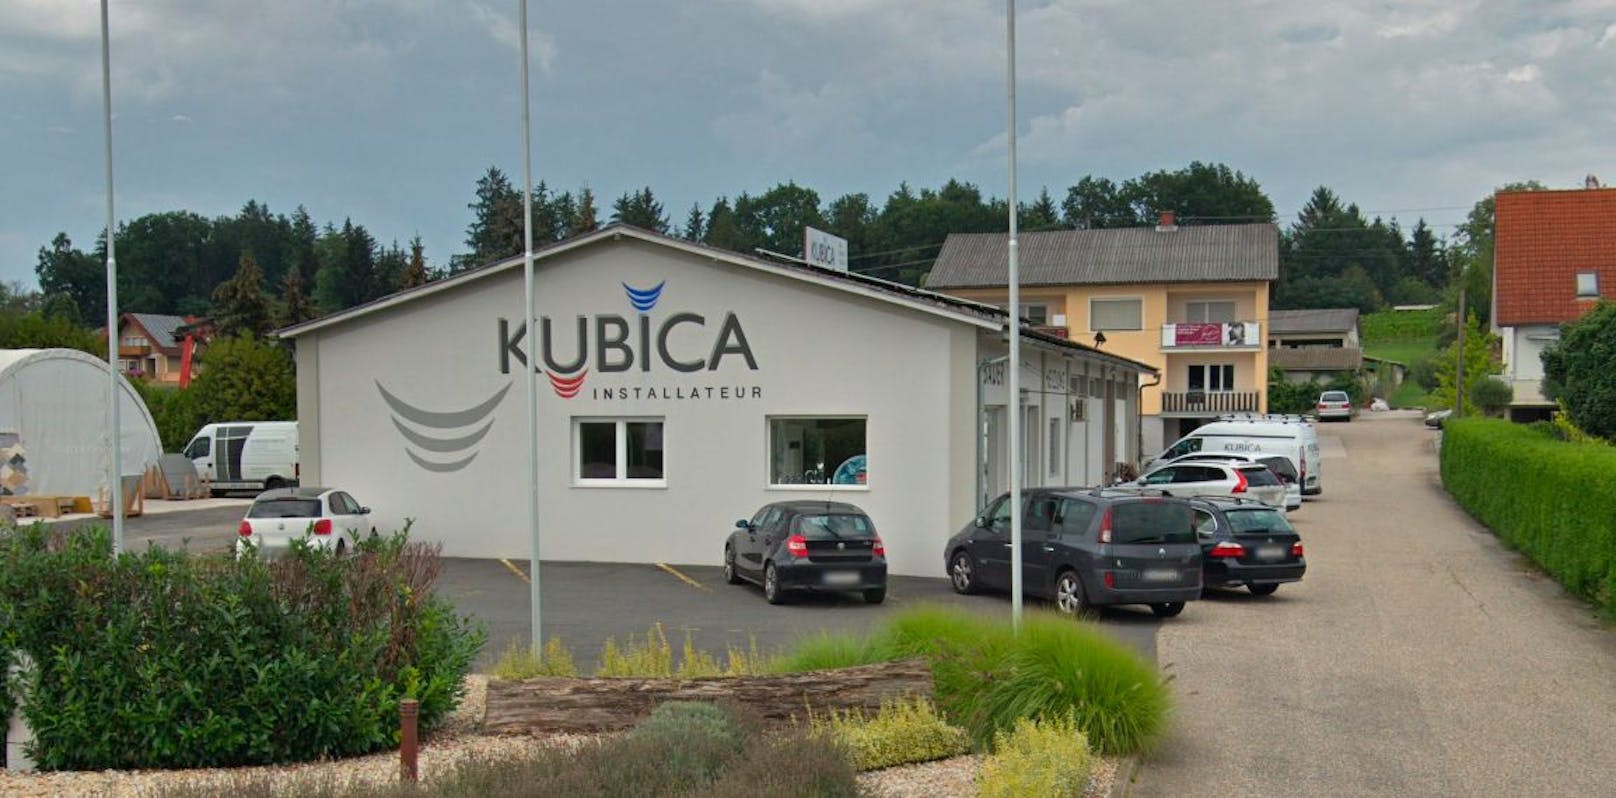 Der Installateur-Betrieb Kubica in der Südsteiermark sucht dringend Personal.